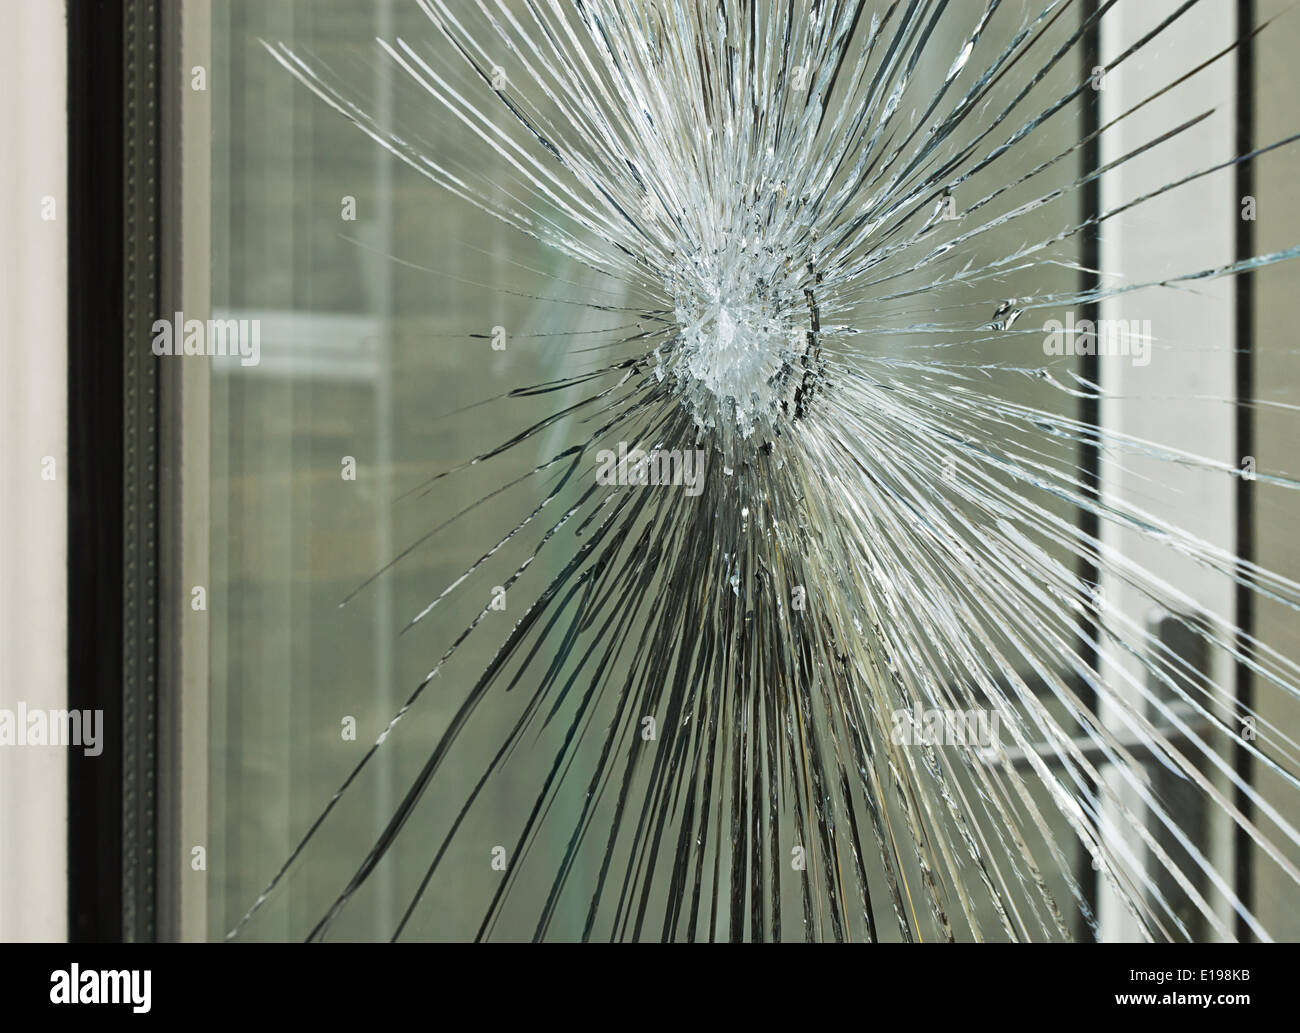 Zerbrochenes Glasfenster zertrümmert durch Unfall oder nach einer Unterbrechung, ideal für einen Versicherungsfall. Stockfoto